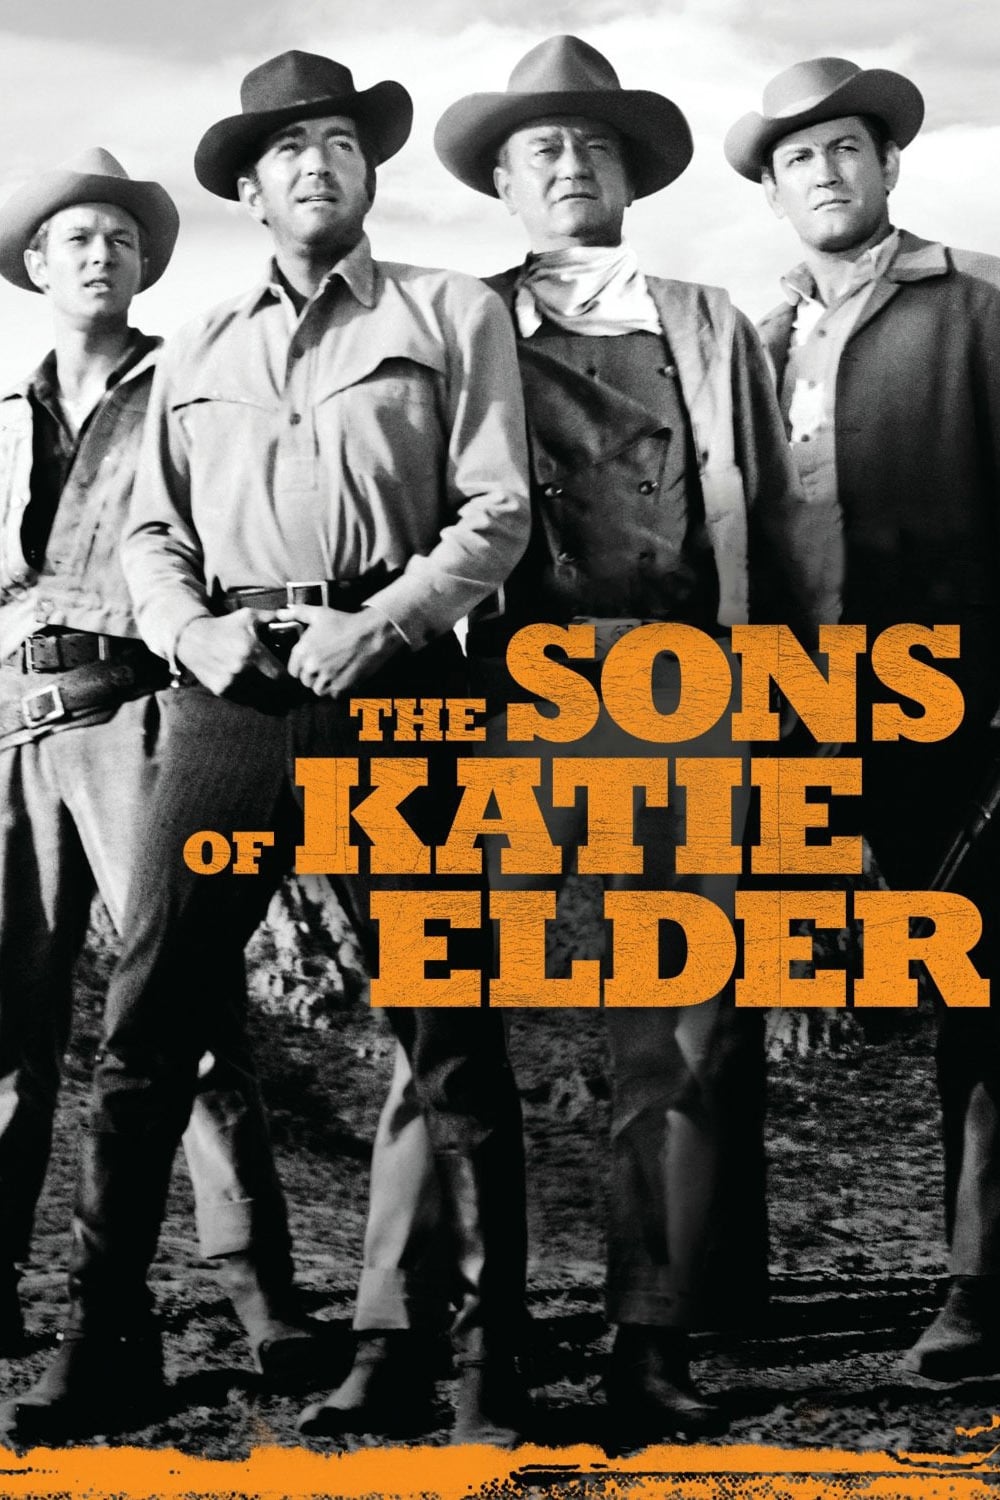 Los cuatro hijos de Katie Elder (1965)